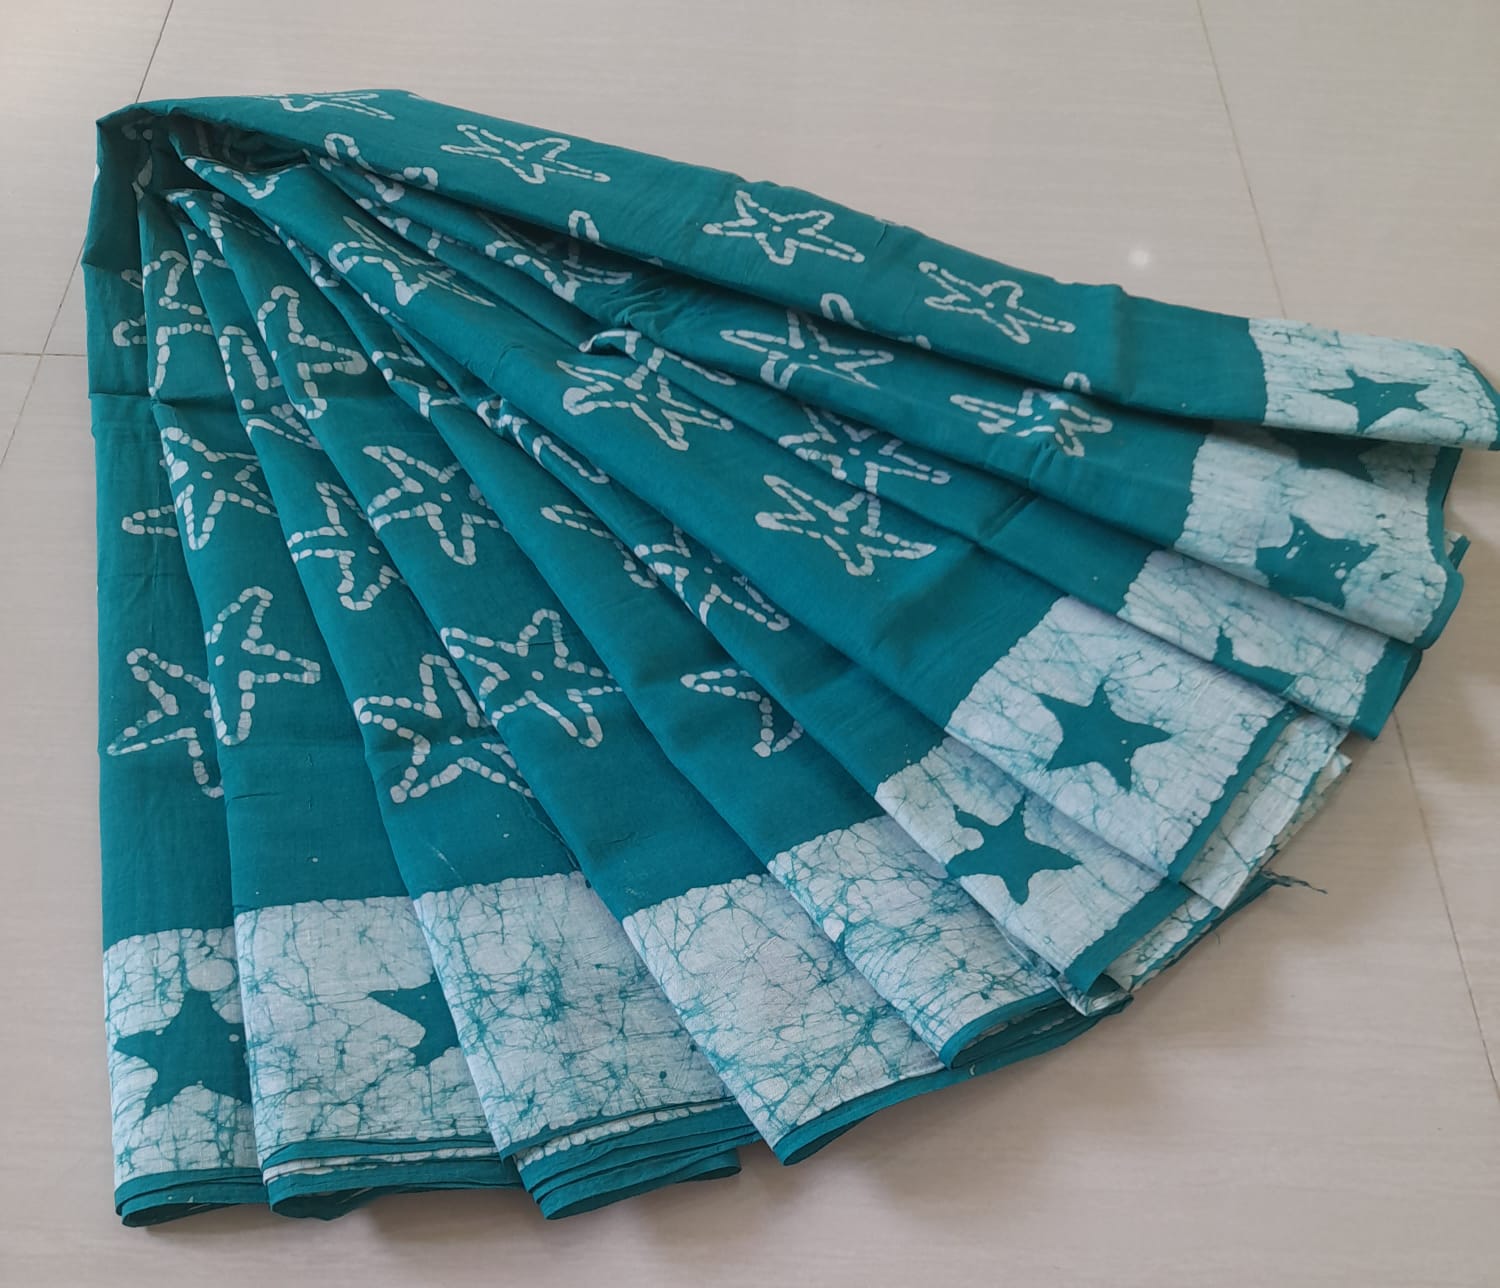 Sungudi wax print cotton saree - Vannamayil Fashions